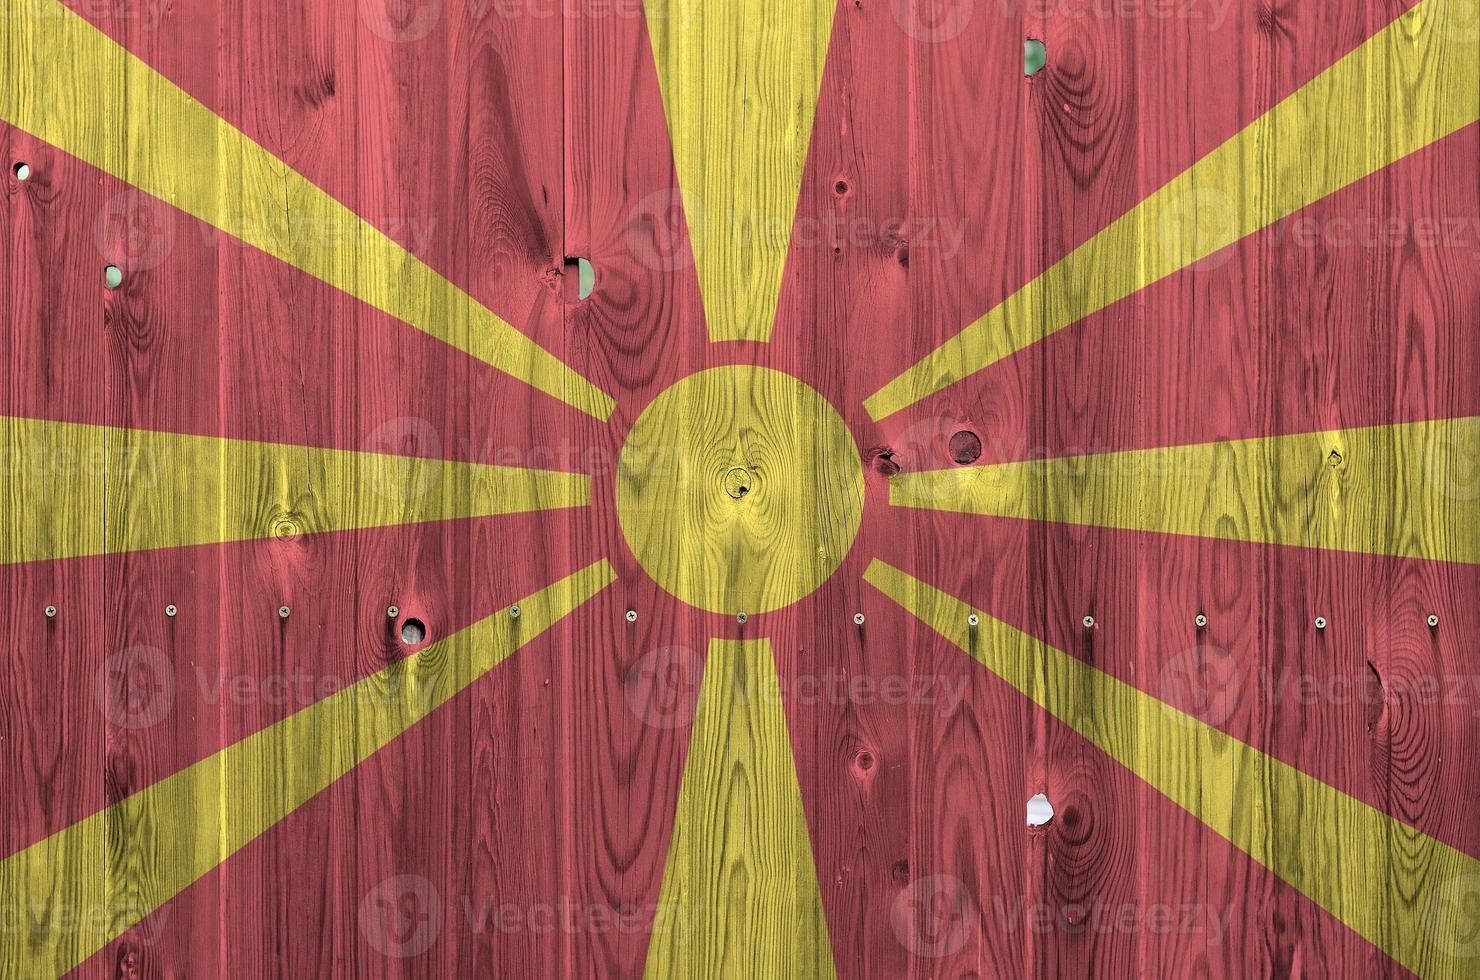 drapeau macédoine représenté dans des couleurs de peinture vives sur un vieux mur en bois. bannière texturée sur fond rugueux photo